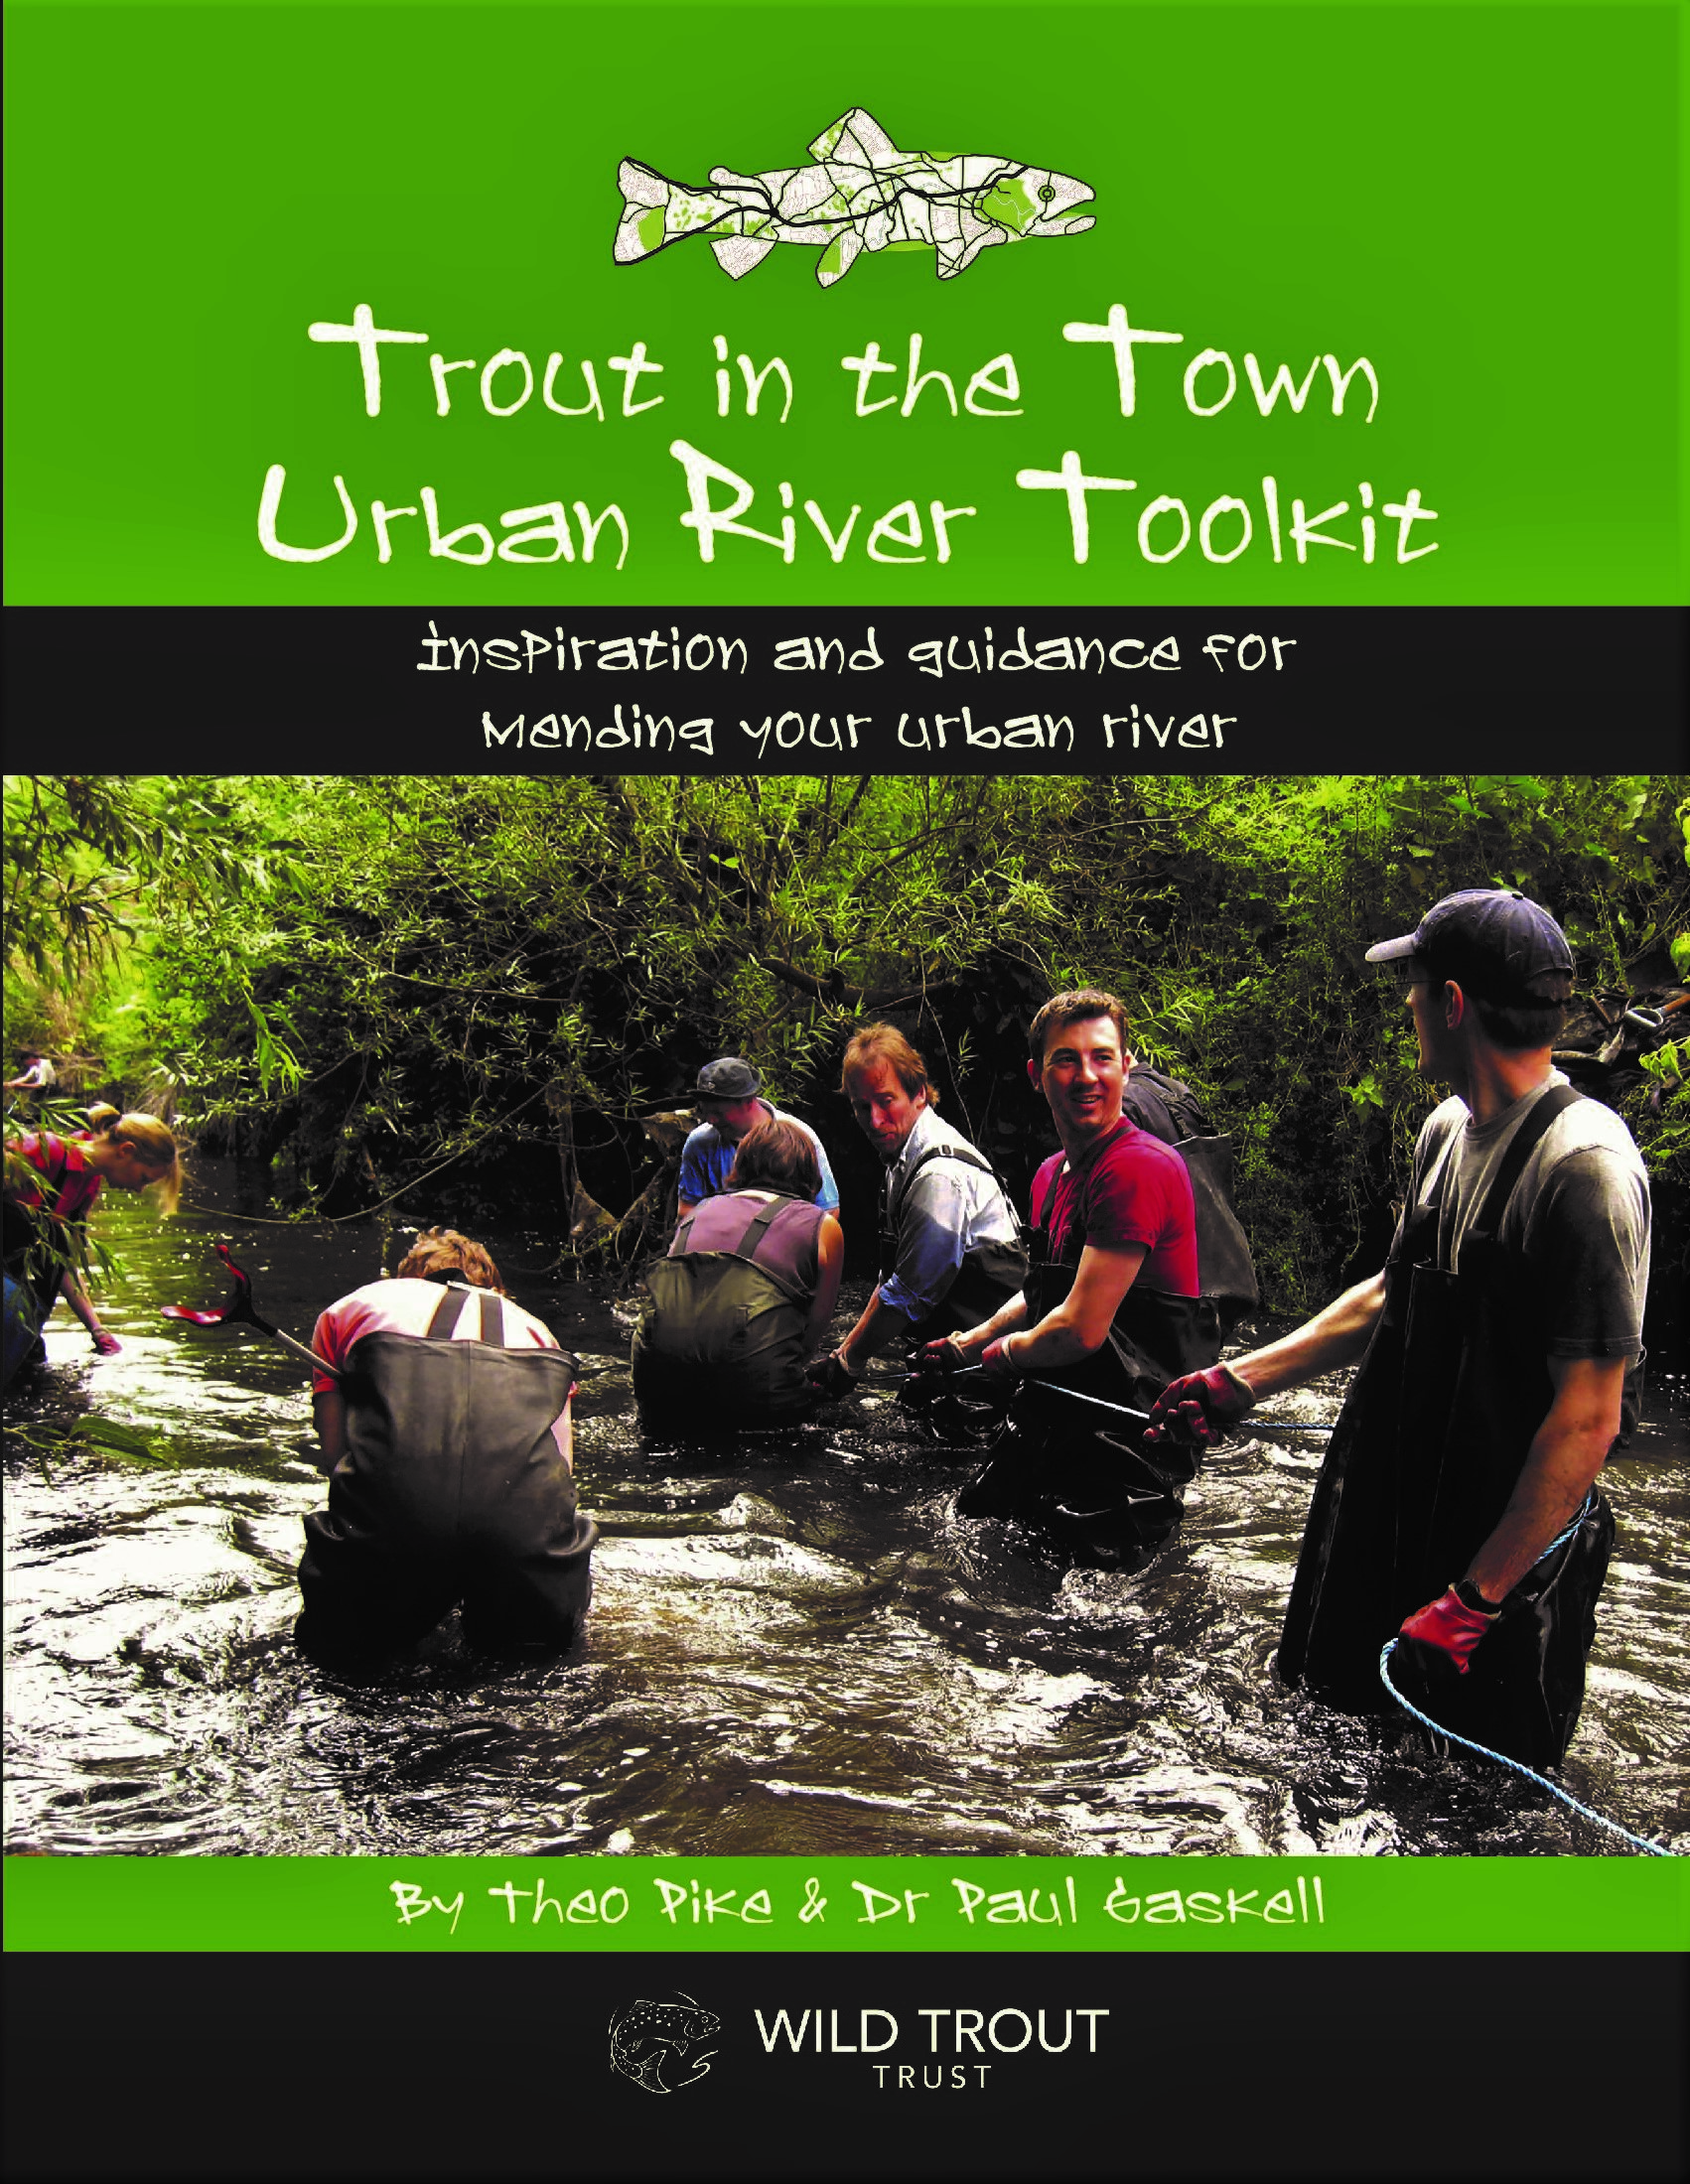 Urban river toolkit